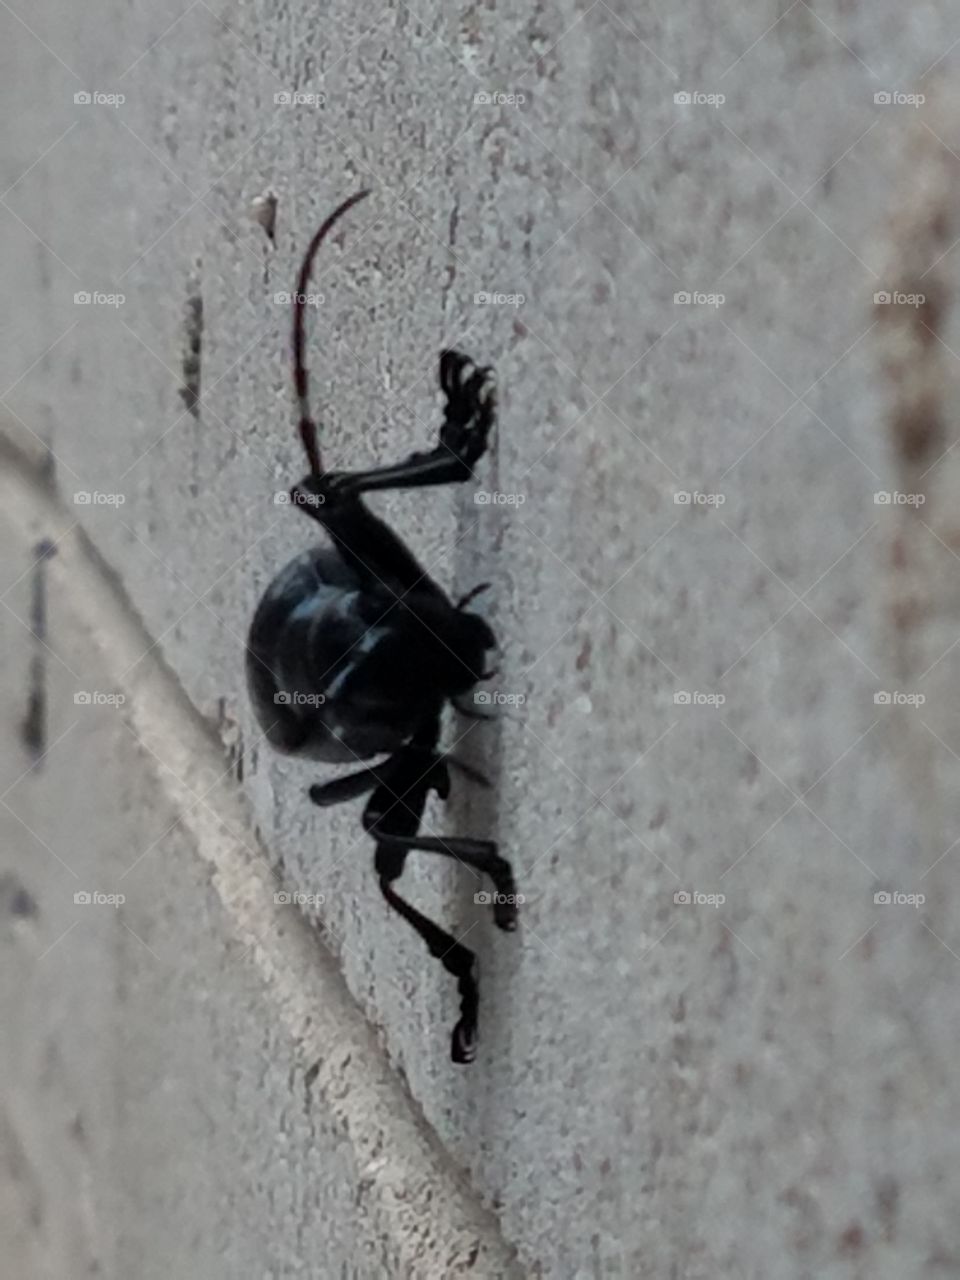 Big Beetle